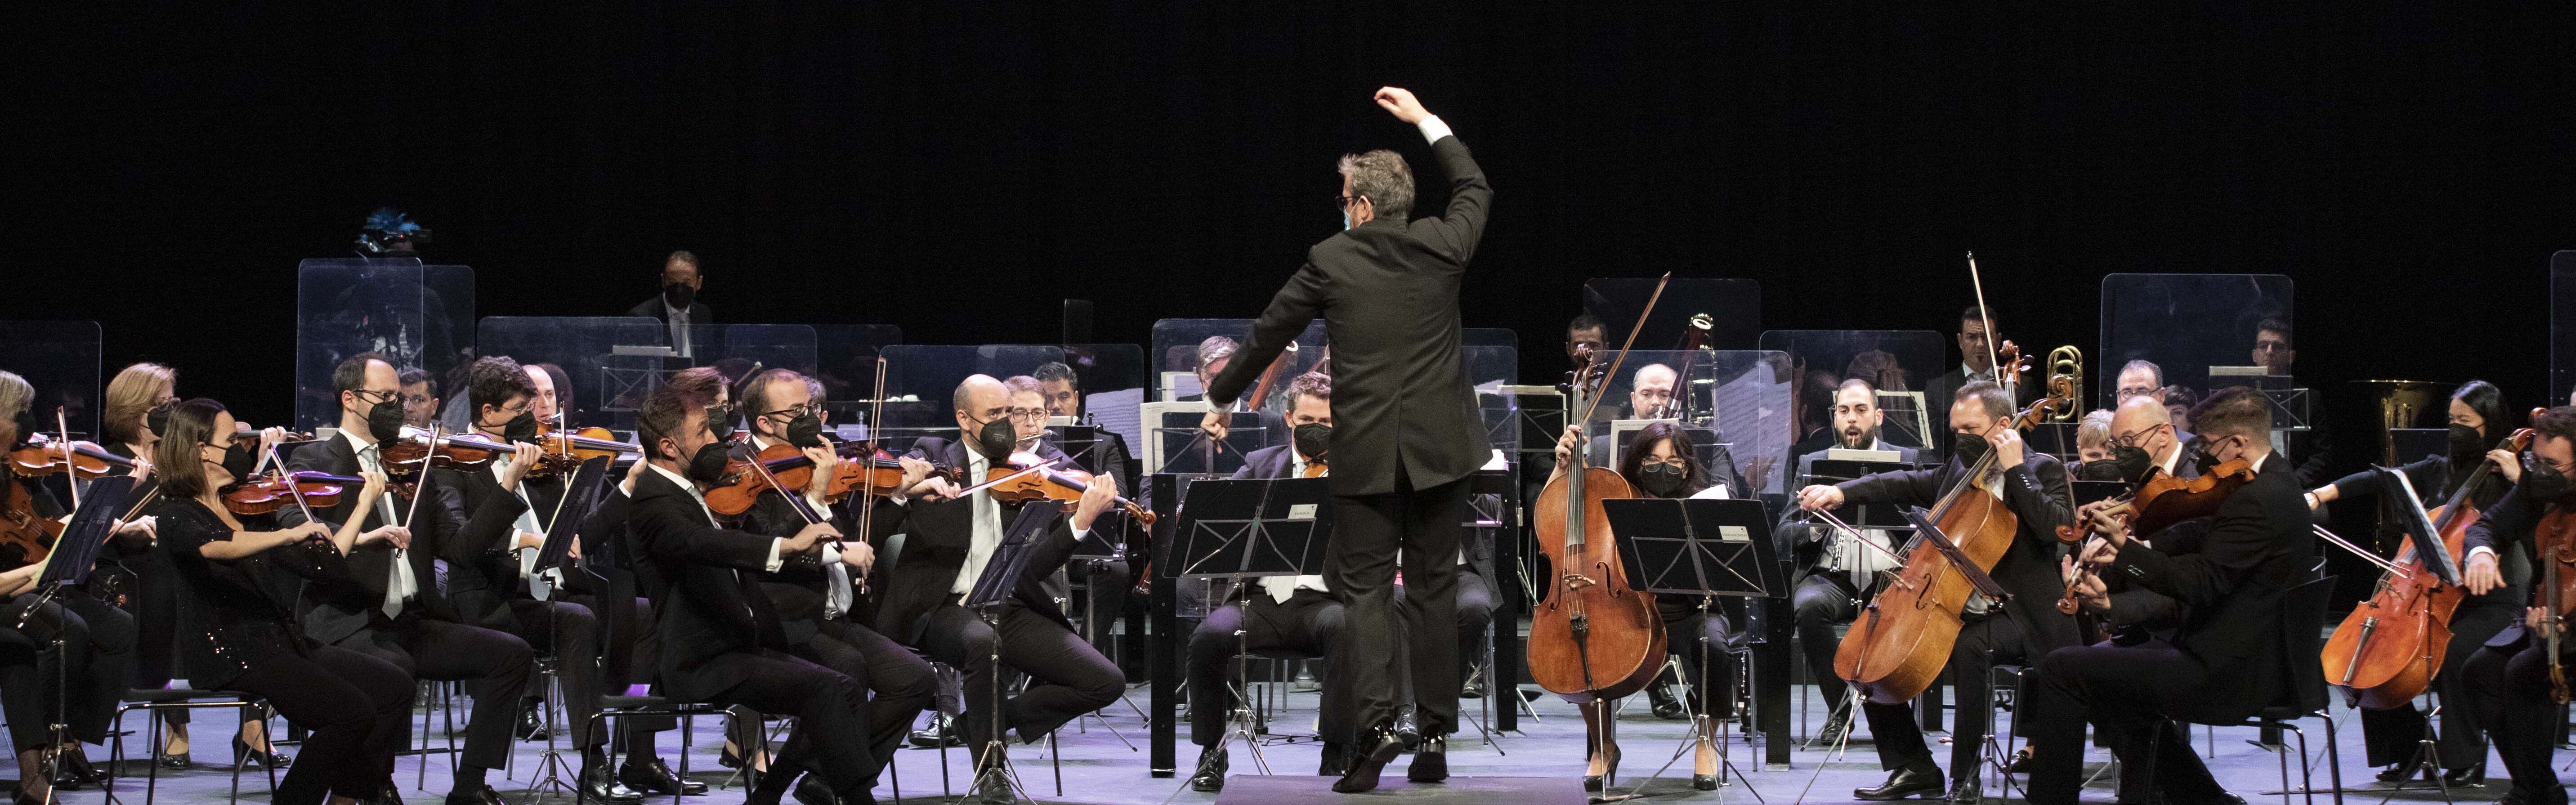 Un Teatro Circo lleno aplaude el concierto de la Orquesta Sinfónica a beneficio de estudiantes de la UMU en riesgo social